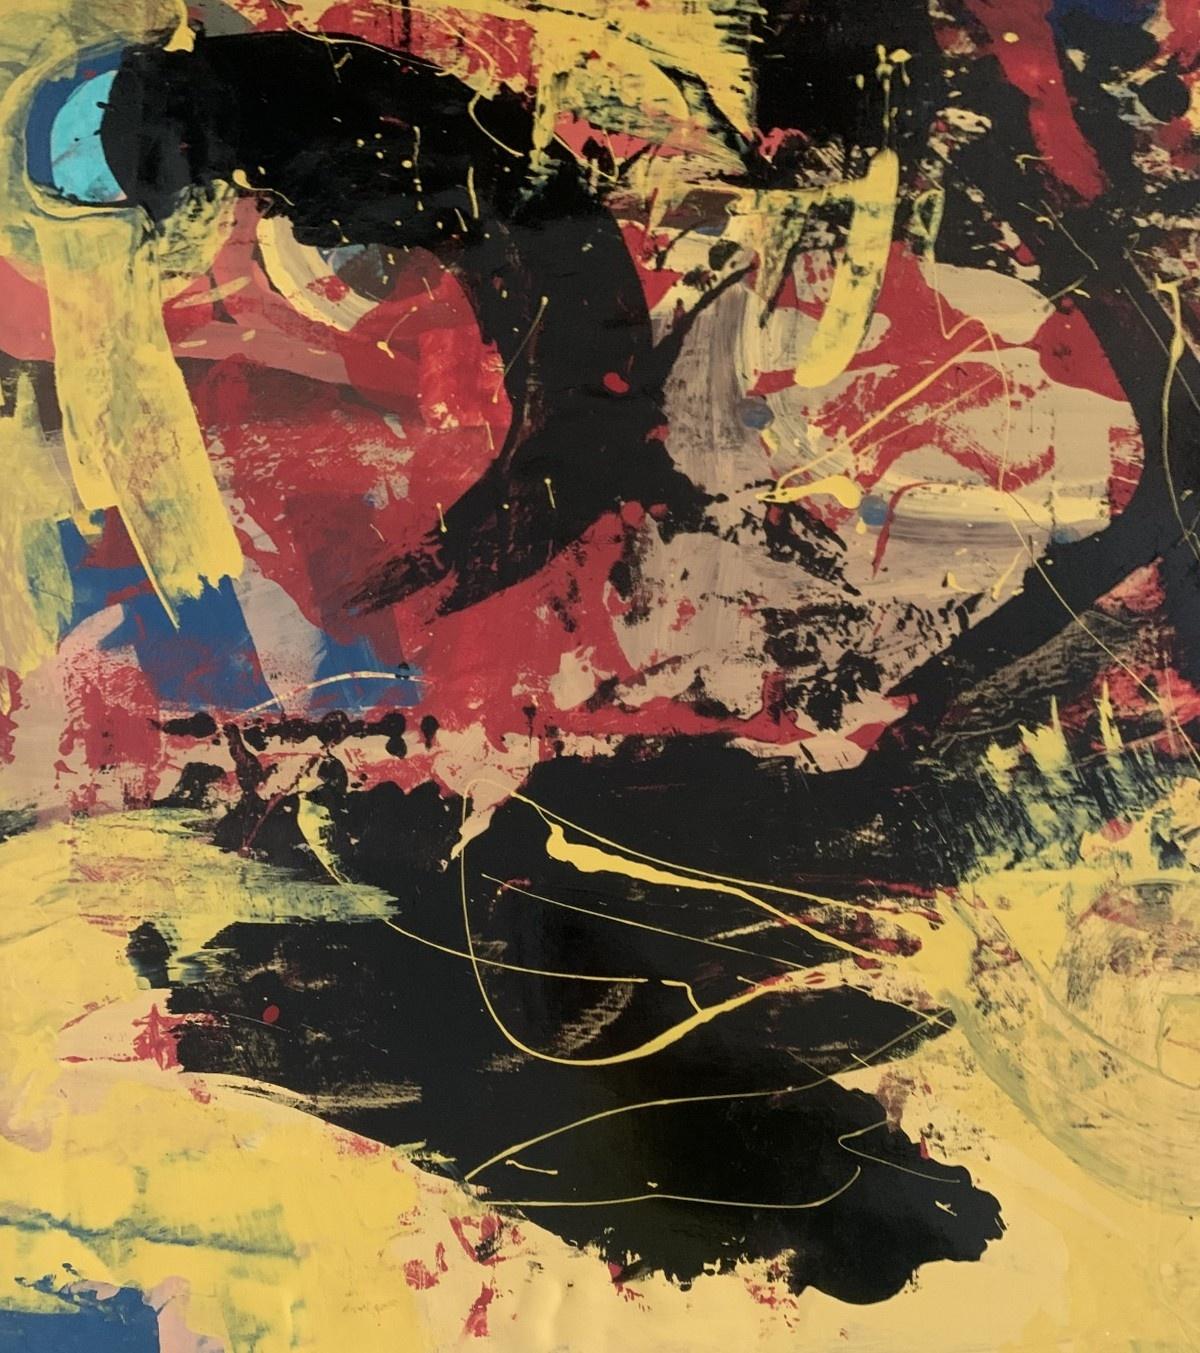 Abstrakte Malerei der in den USA lebenden polnischen Künstlerin Monika Rossa. Malerei im Stil der gestischen Abstraktion mit dynamischen Pinselstrichen und Formen. Die Hauptfarbe ist gelb mit roten und schwarzen sowie blauen Akzenten. Aufgrund der